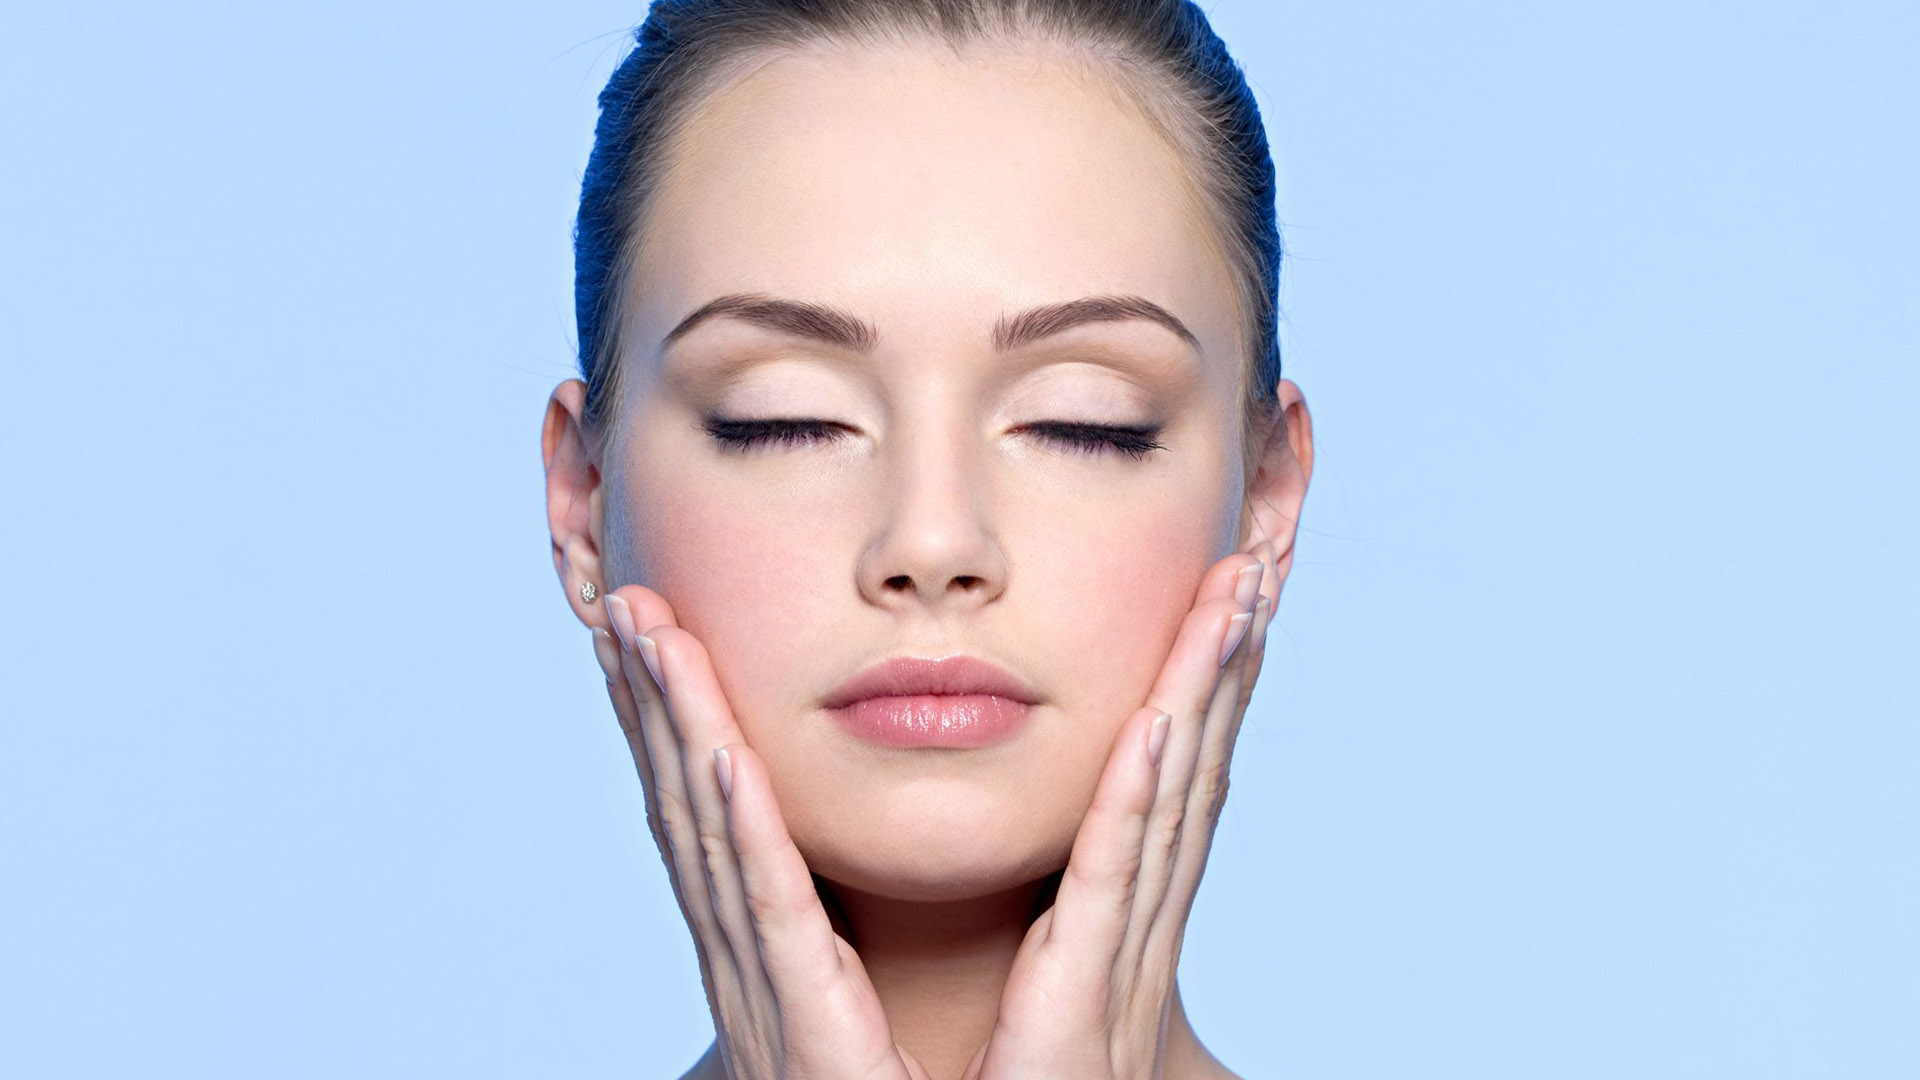 Una dieta balanceada es más eficiente que las cremas, maquillajes y tratamientos faciales usados con frecuencia para combatir las afecciones del rostro